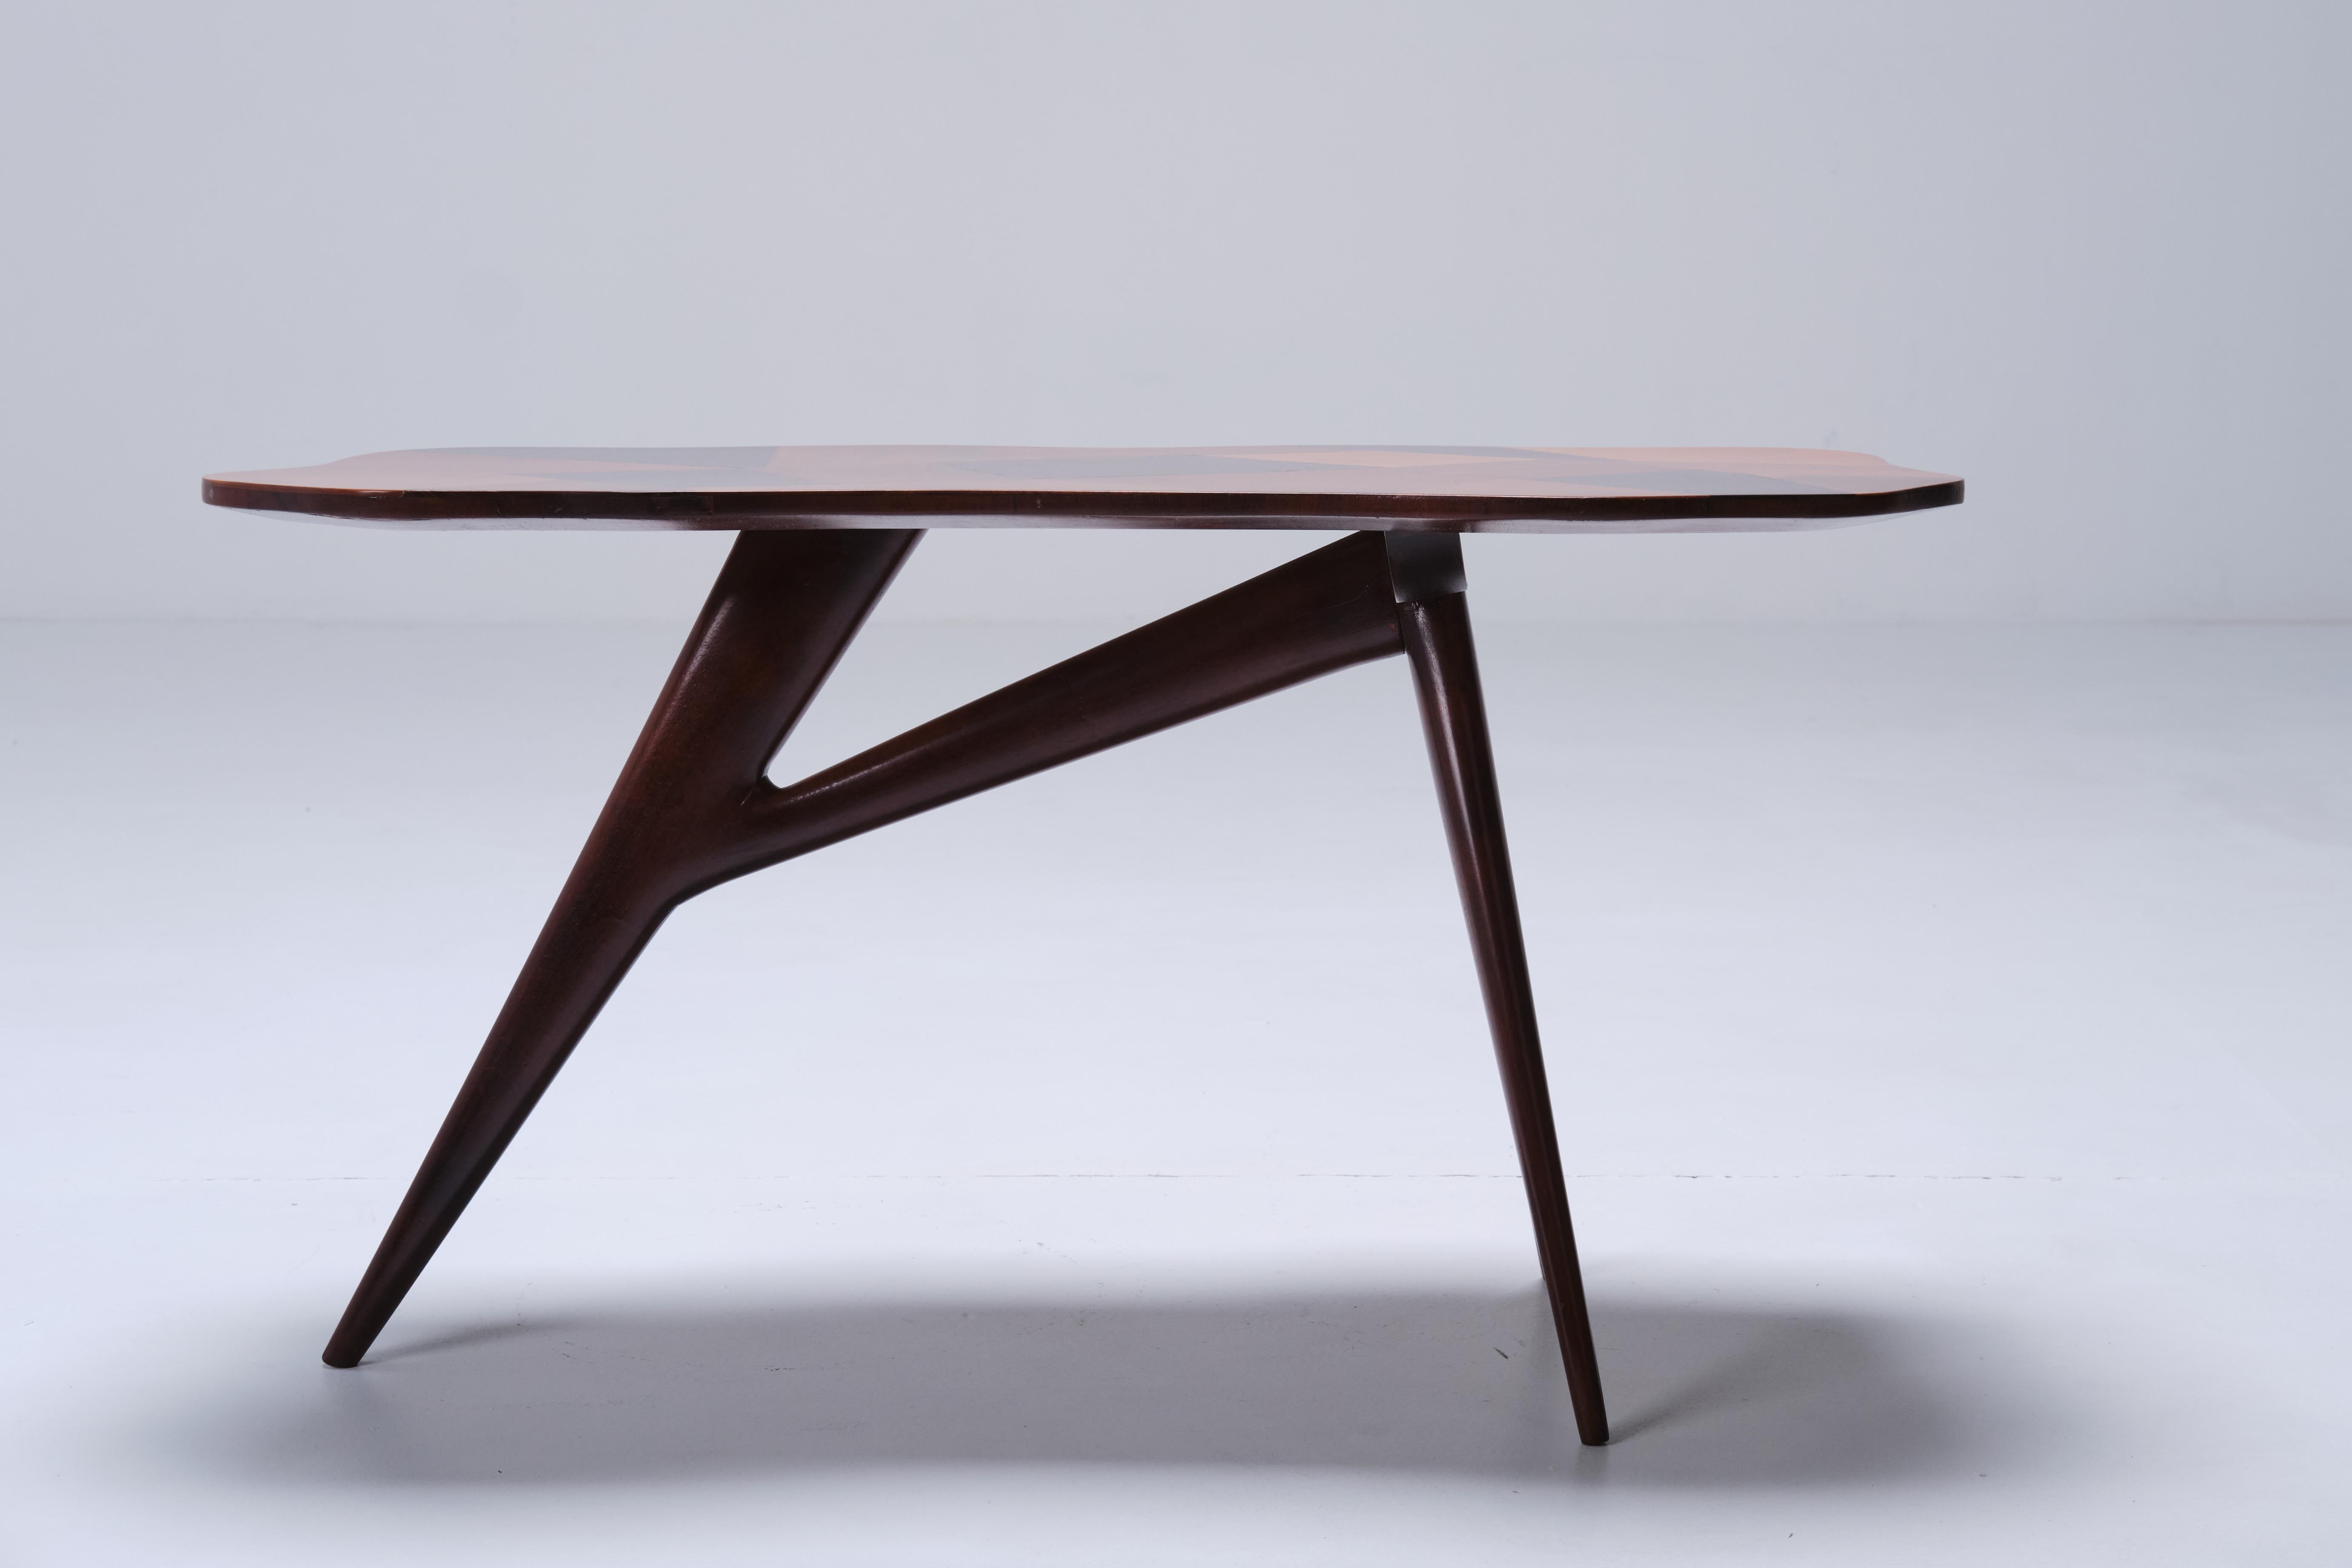 Une table basse extrêmement élégante de Pierluigi Giordani. Belle forme de bois.
Giordani a été nommé correspondant académique par l'Académie des arts et du design en 1970.
Au cours de sa carrière, il participe également à de nombreux concours